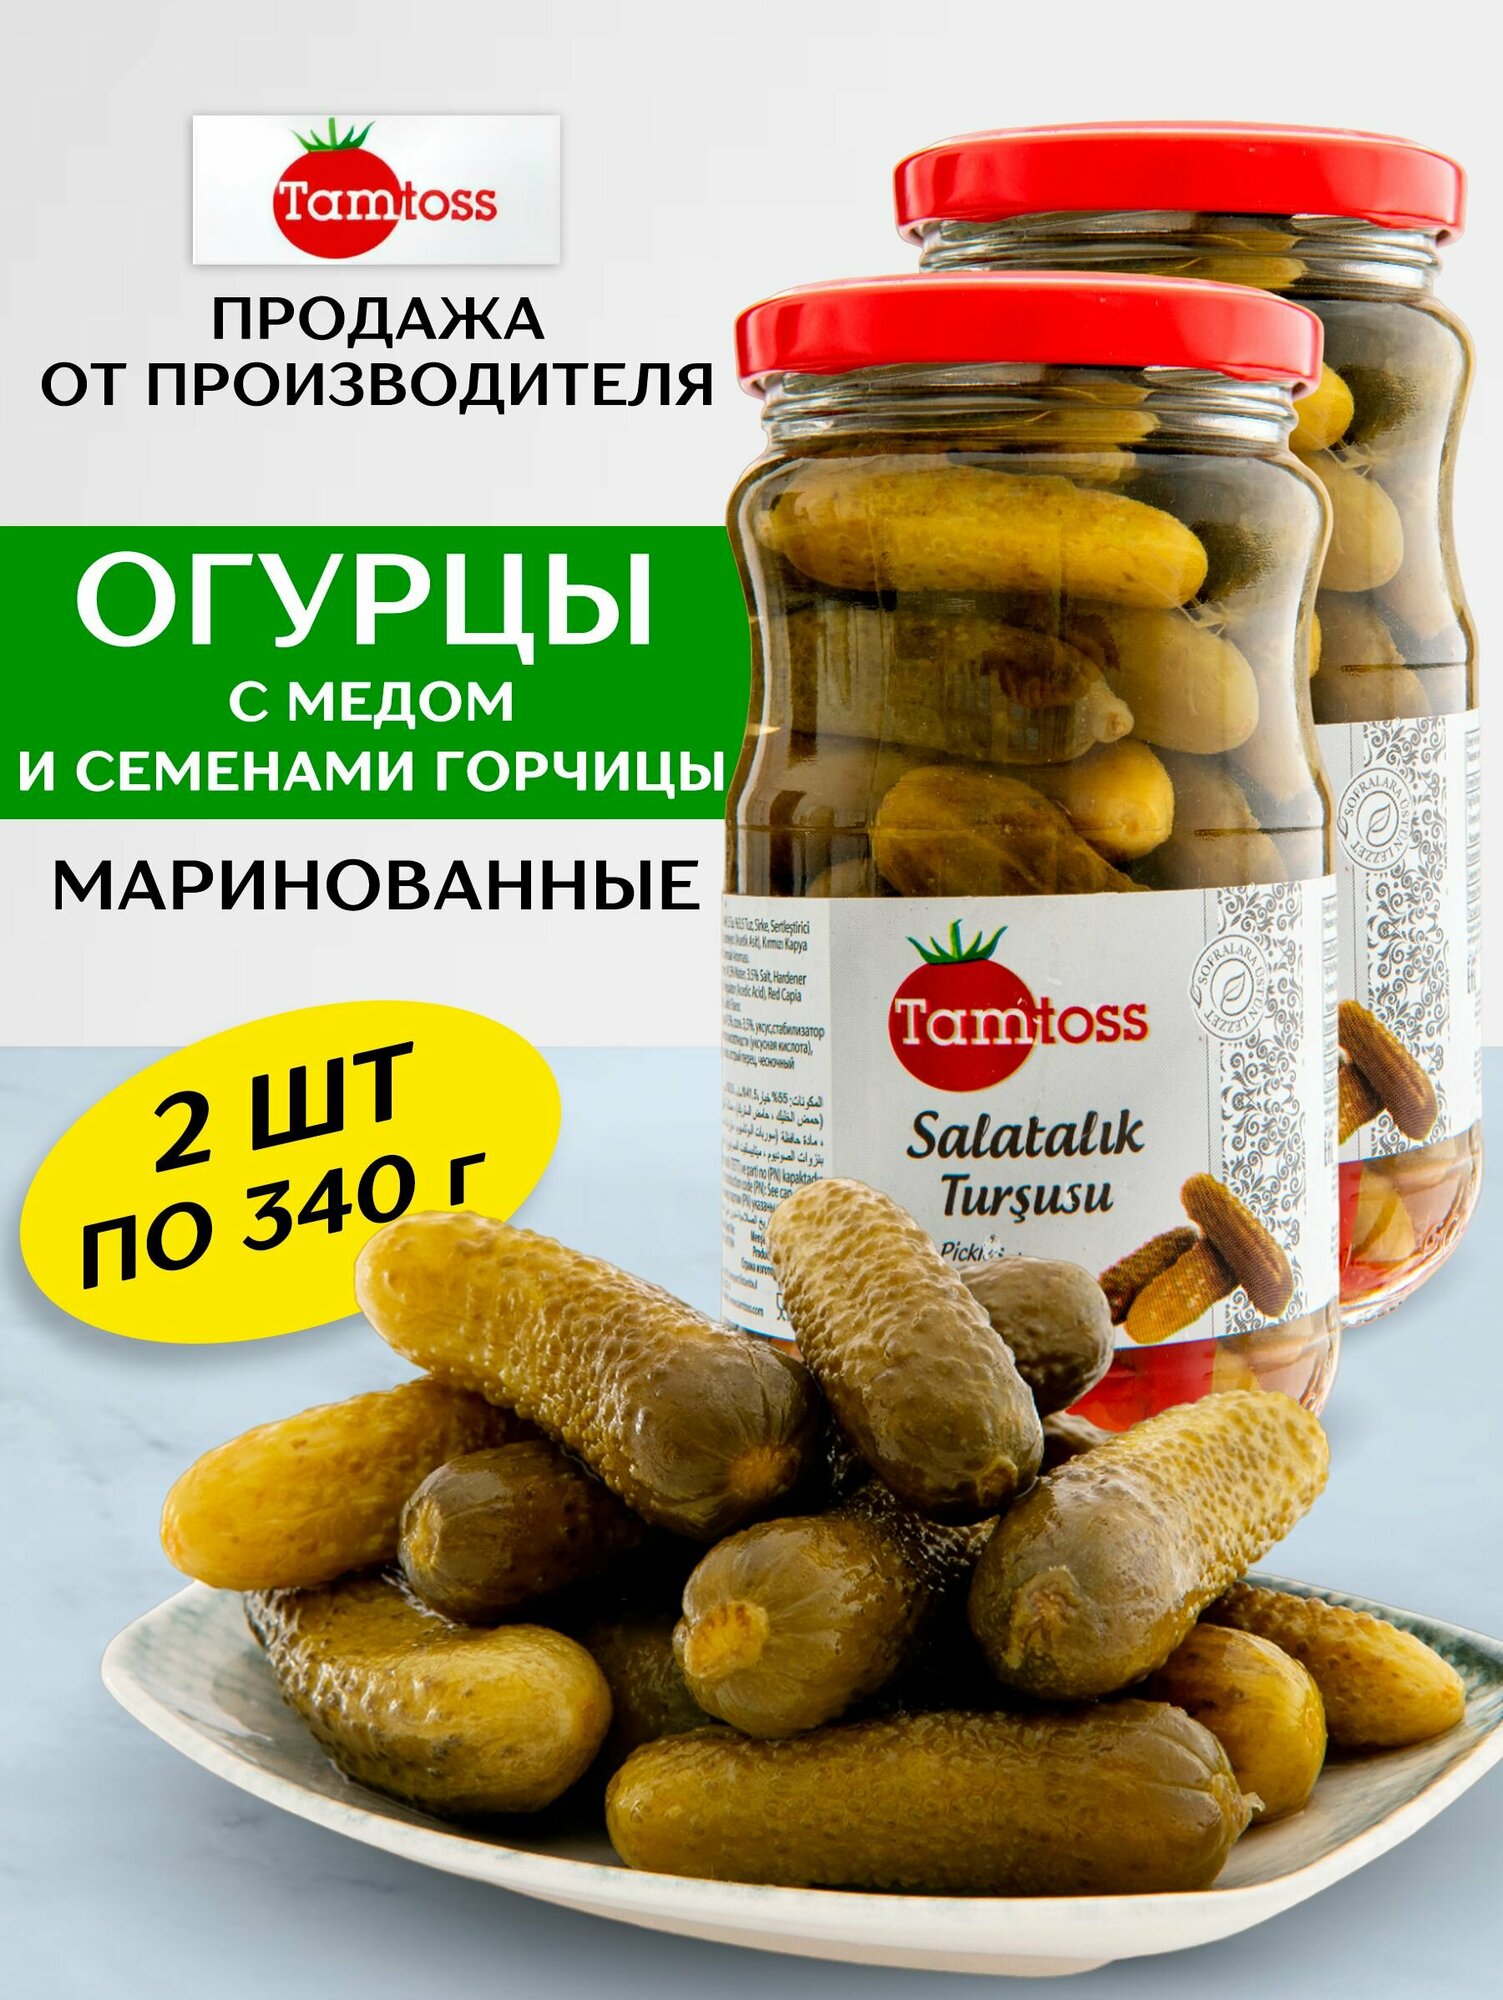 Огурцы маринованные с медом и семенами горчицы 2 шт по 340 гр